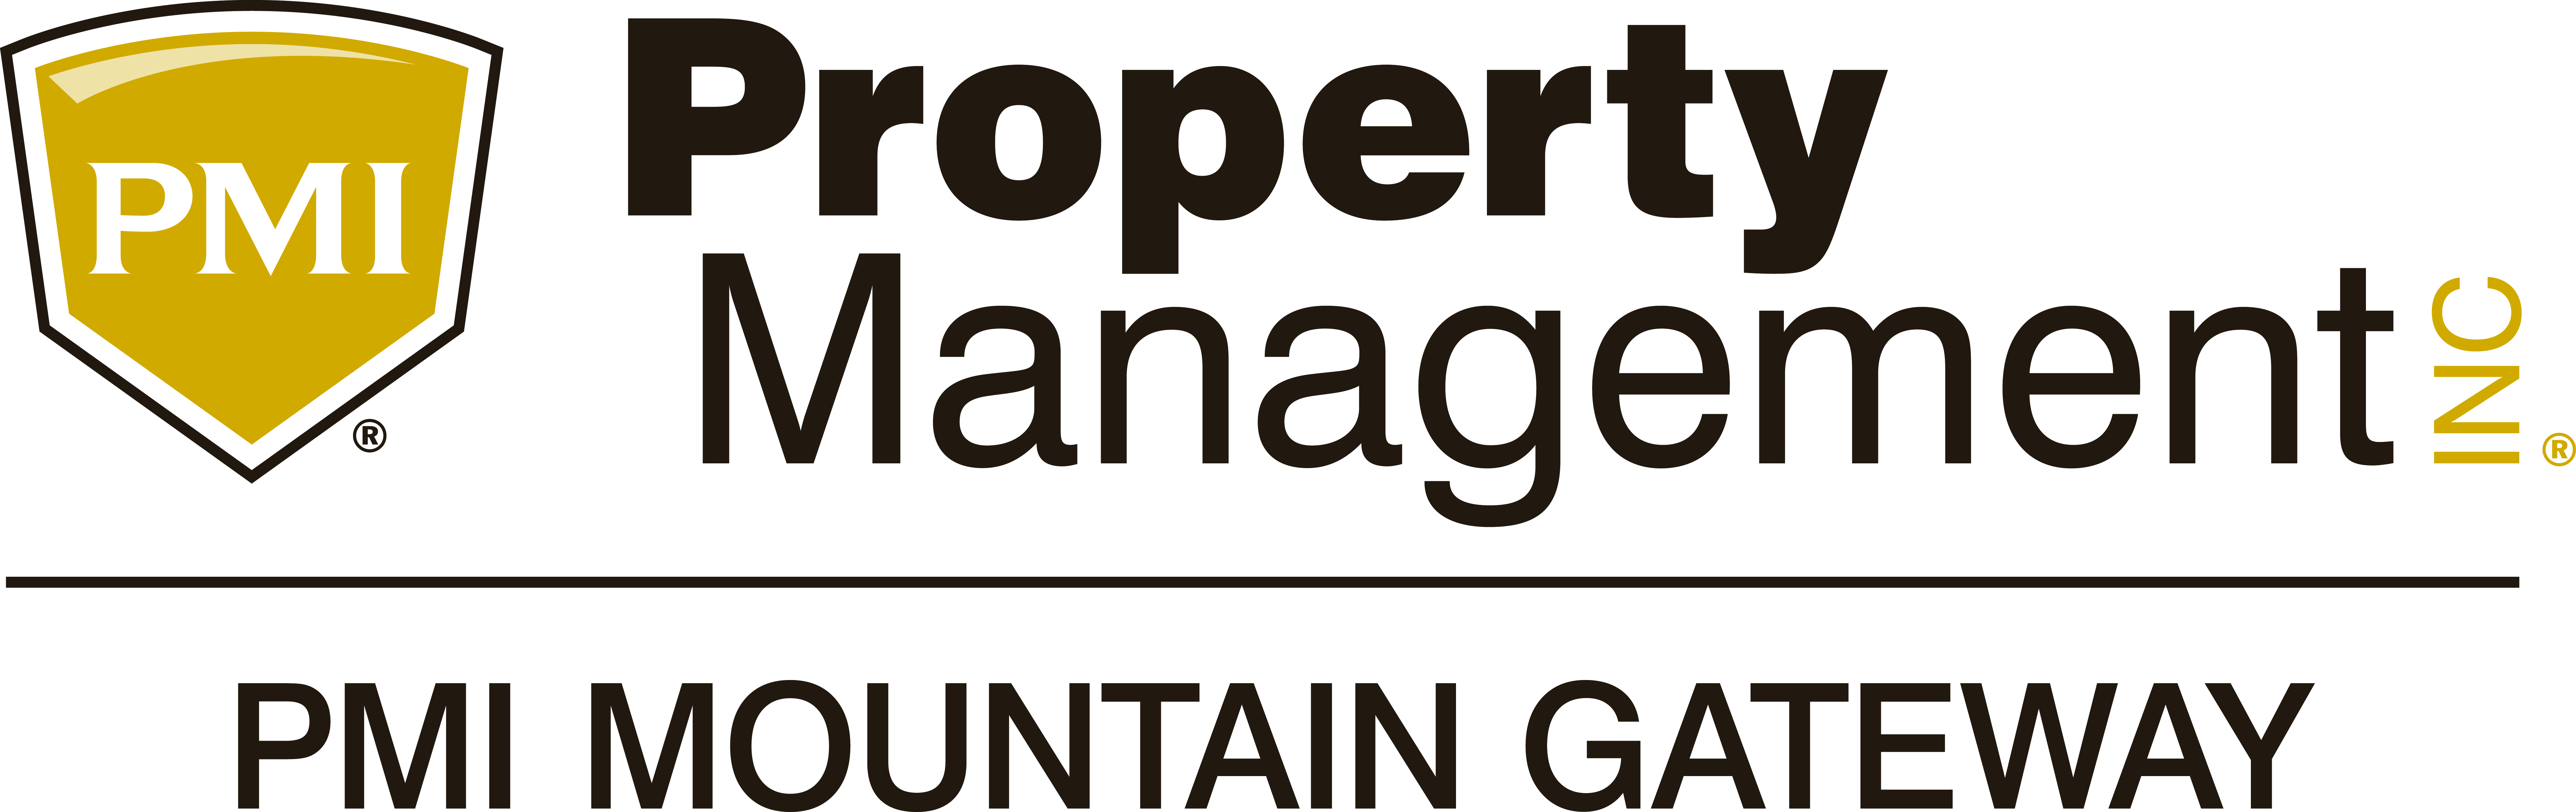 PMI Mountain Gateway logo